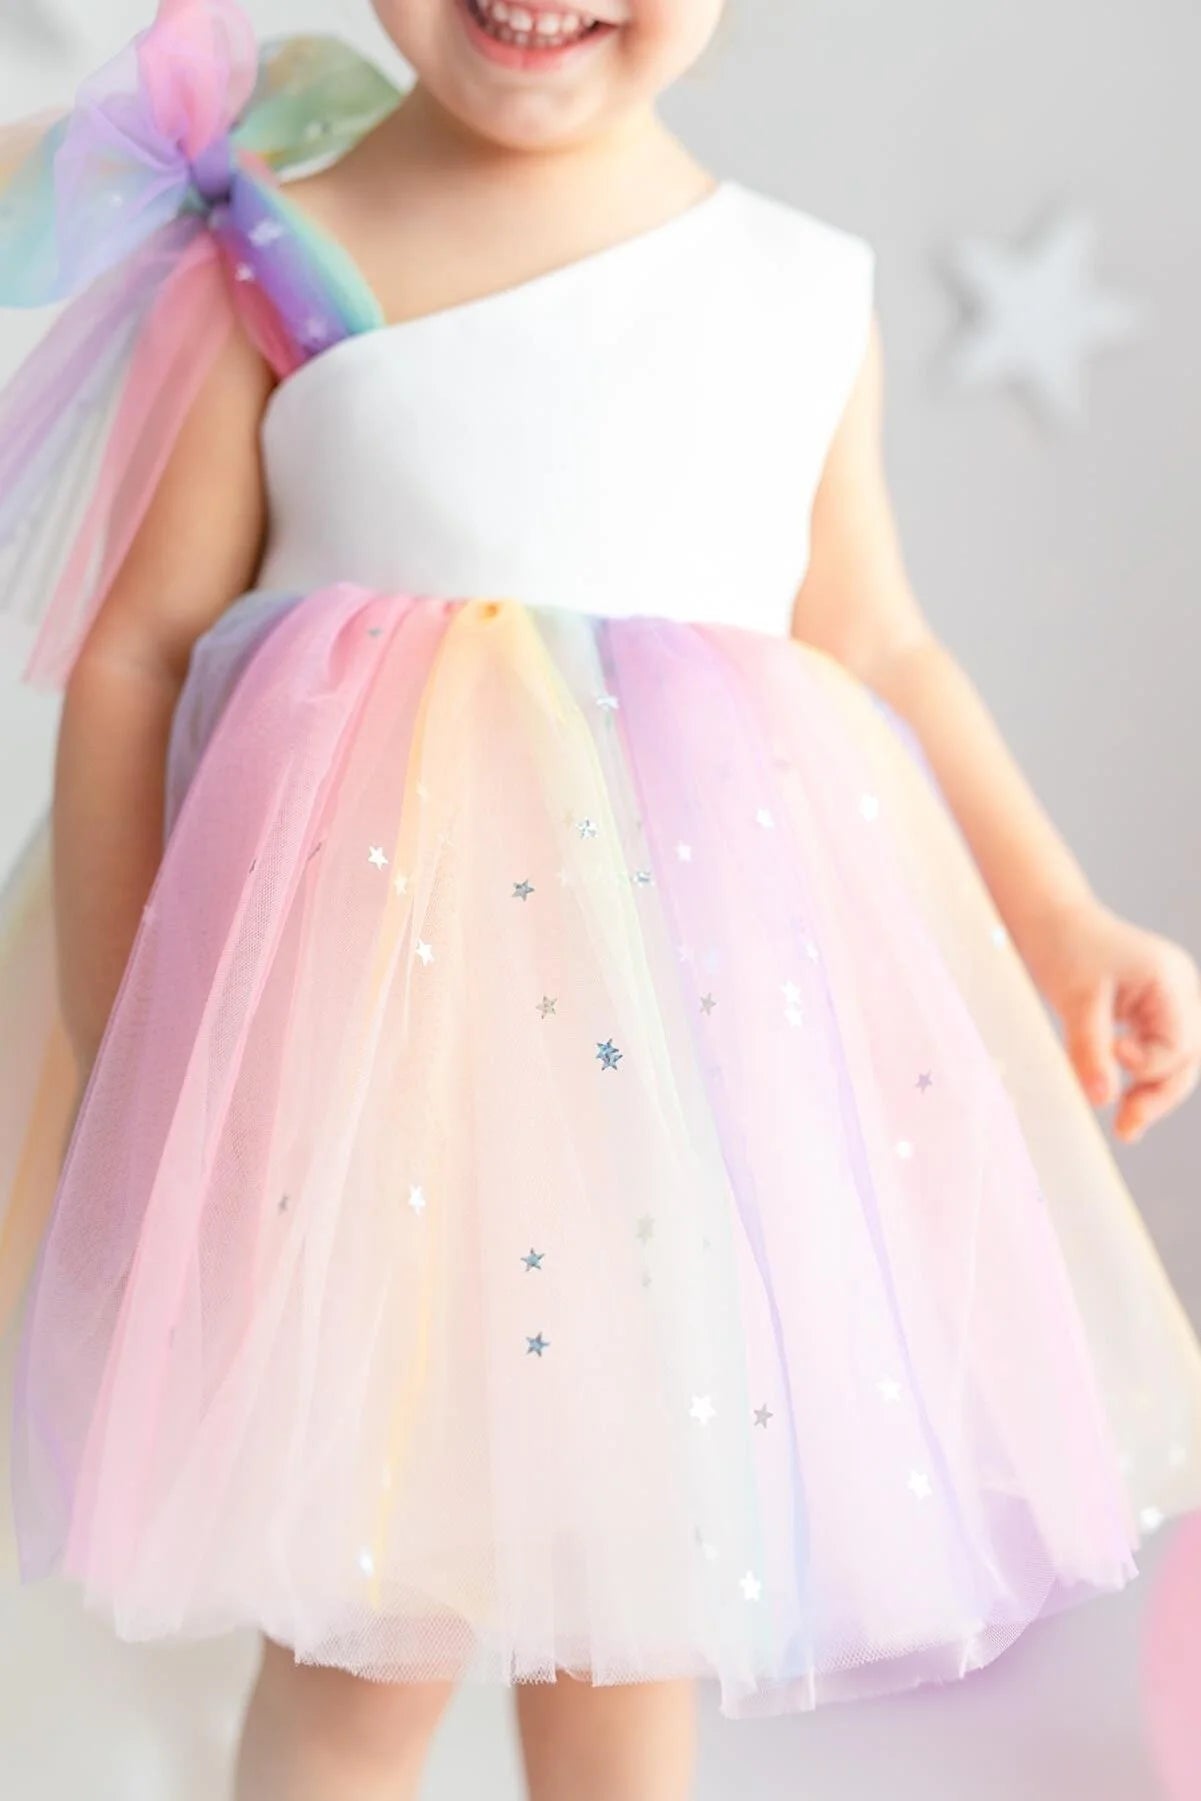 Cake Pop Unicorn Dress